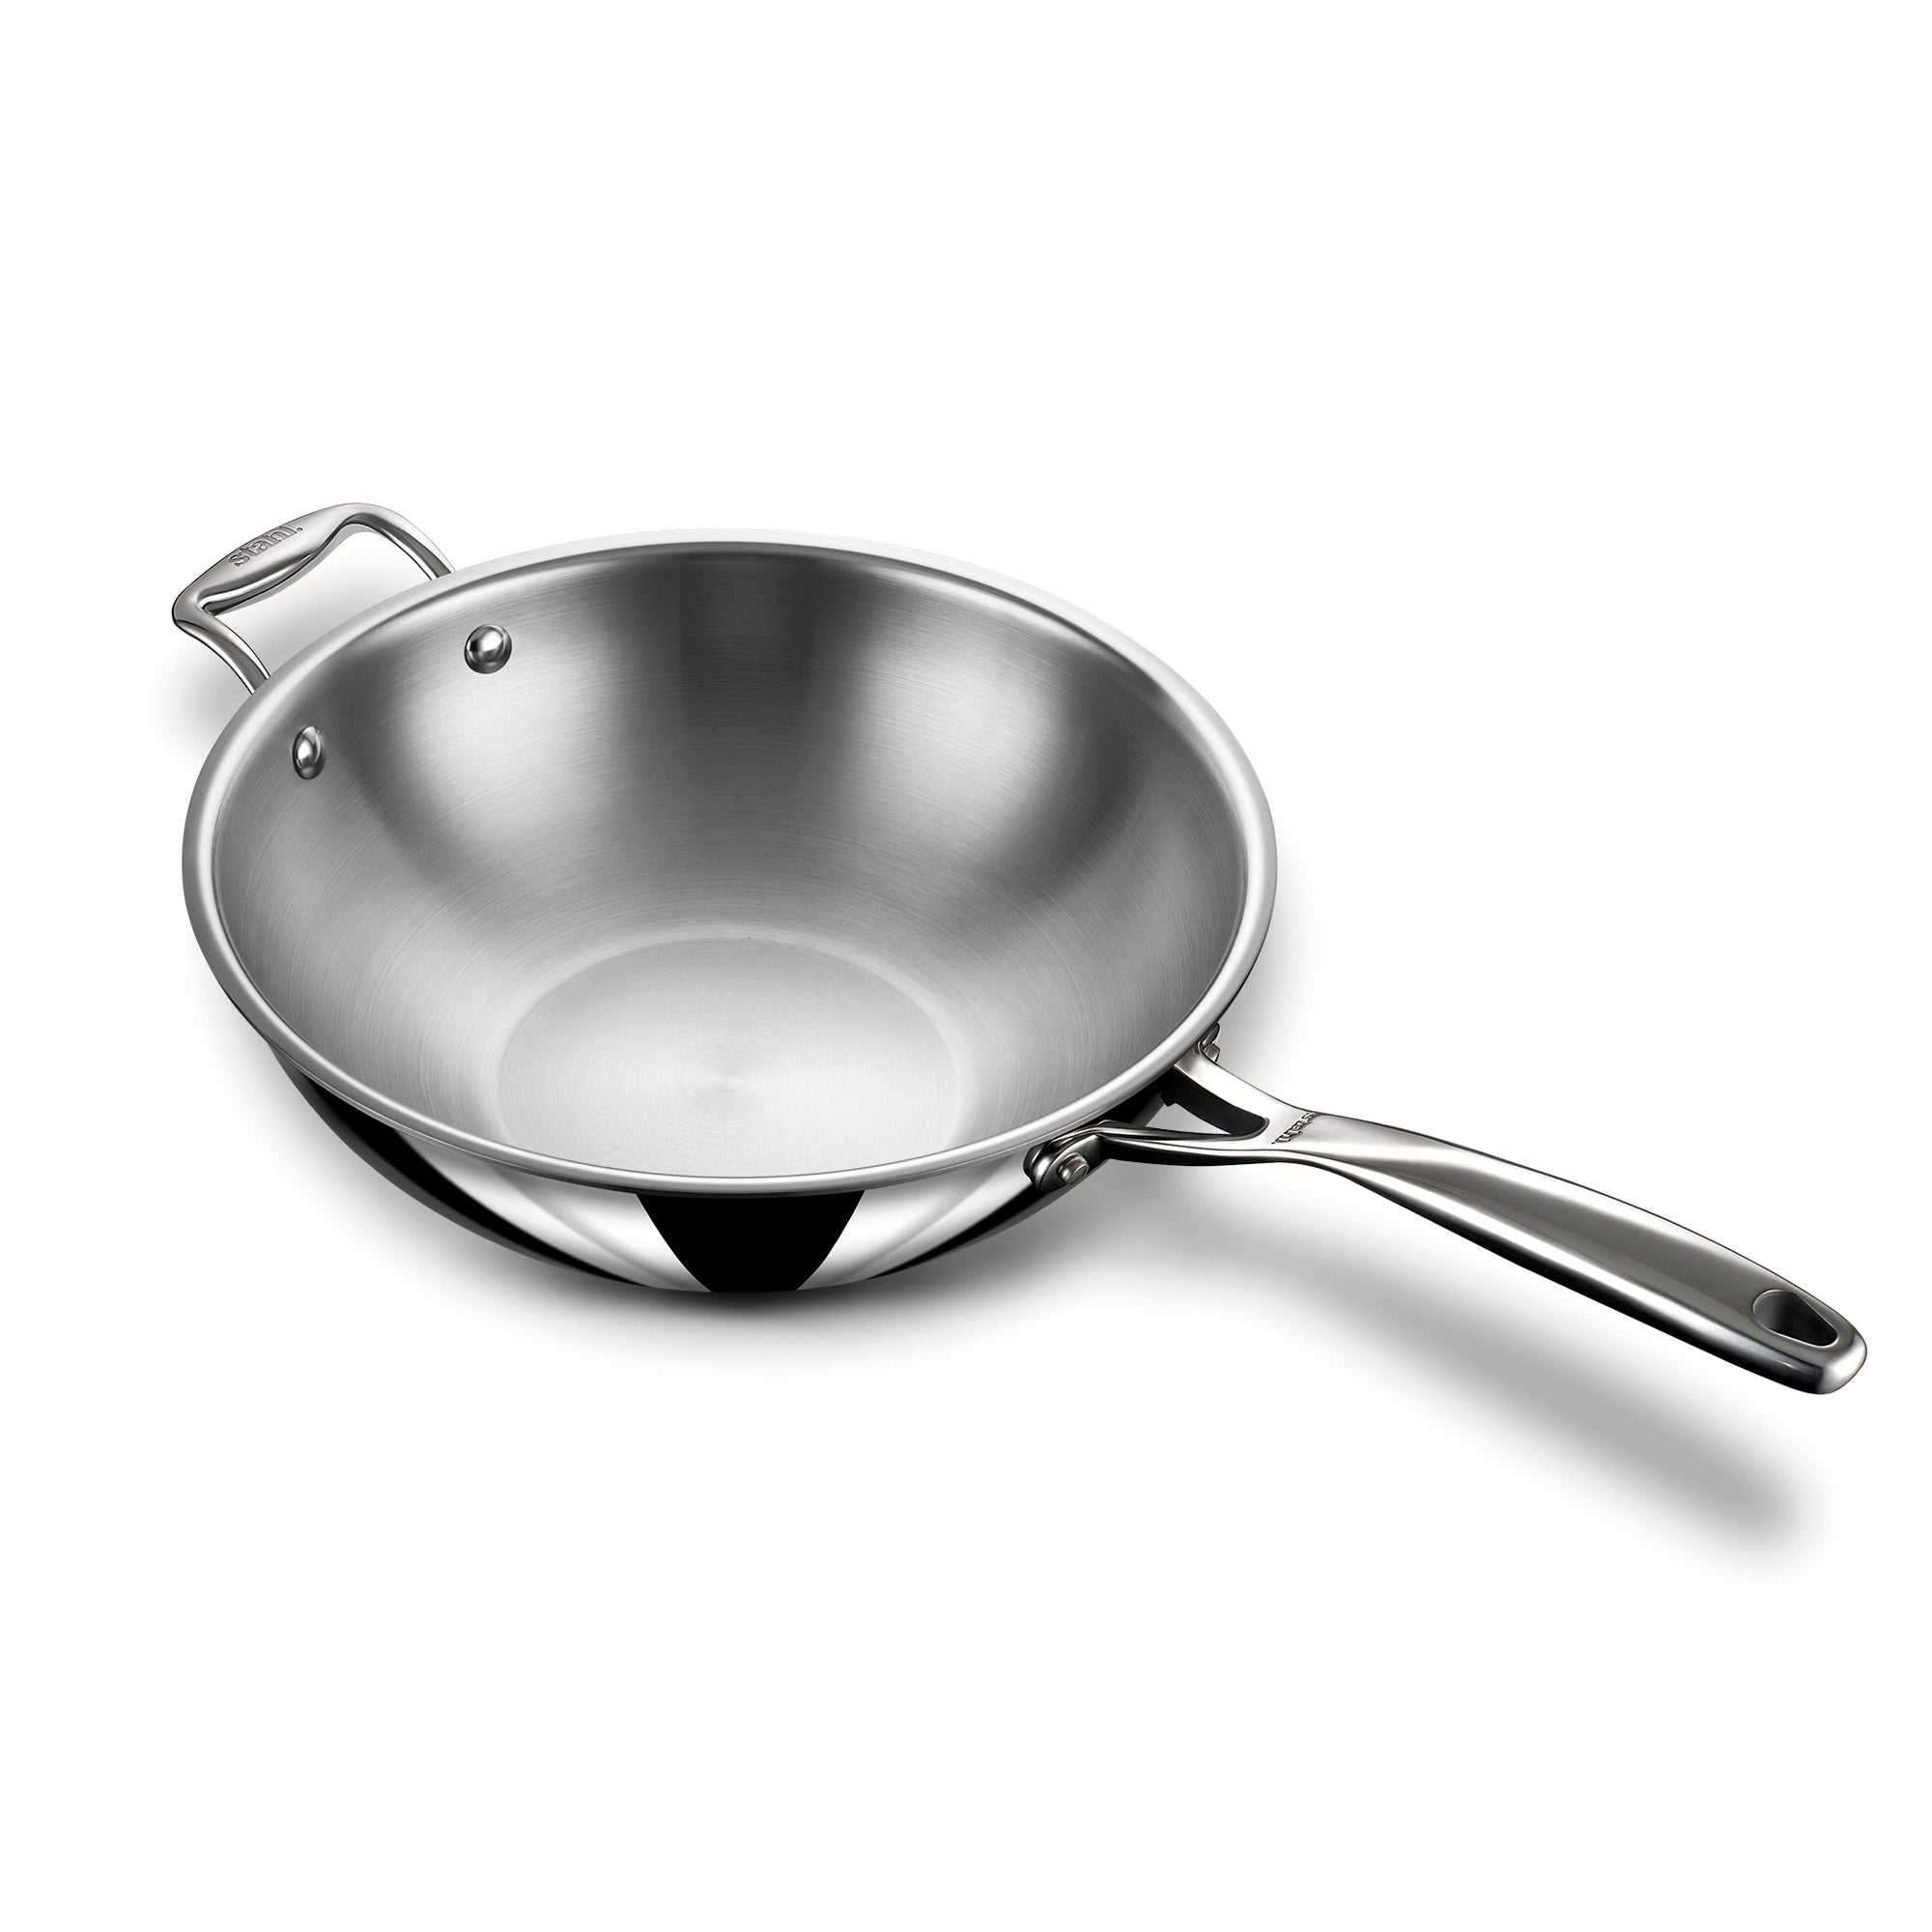 Stahl Stainless Steel Triply Artisan Deep Fry Pan